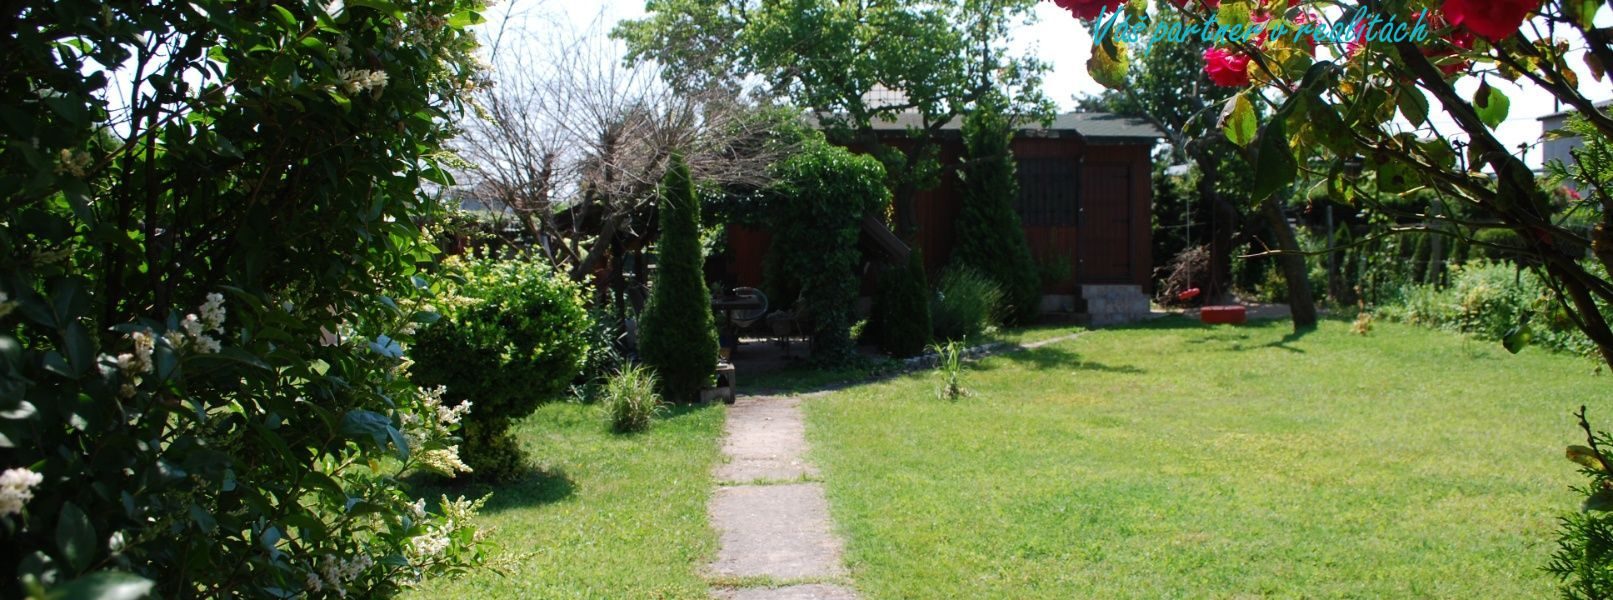 Záhrada s chatkou 520 m2- ČASOVO OBMEDZENÁ PONUKA - 41 500€